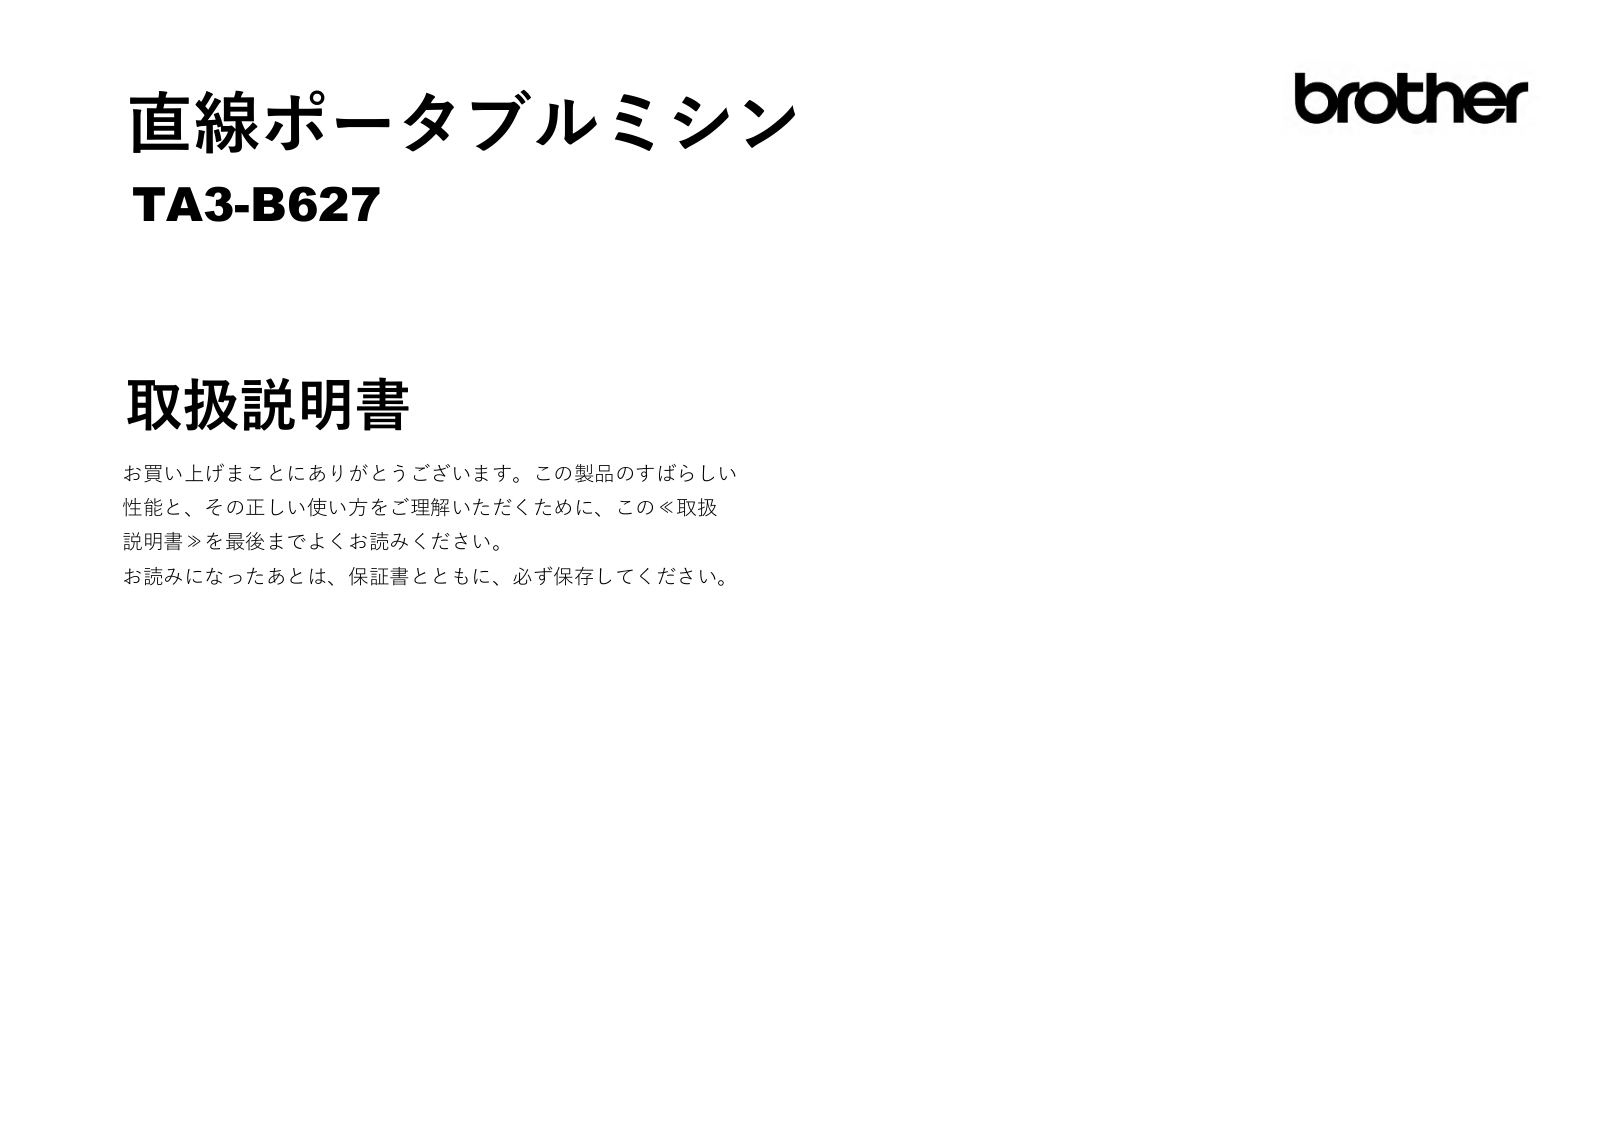 Brother TA3-B627 User manual